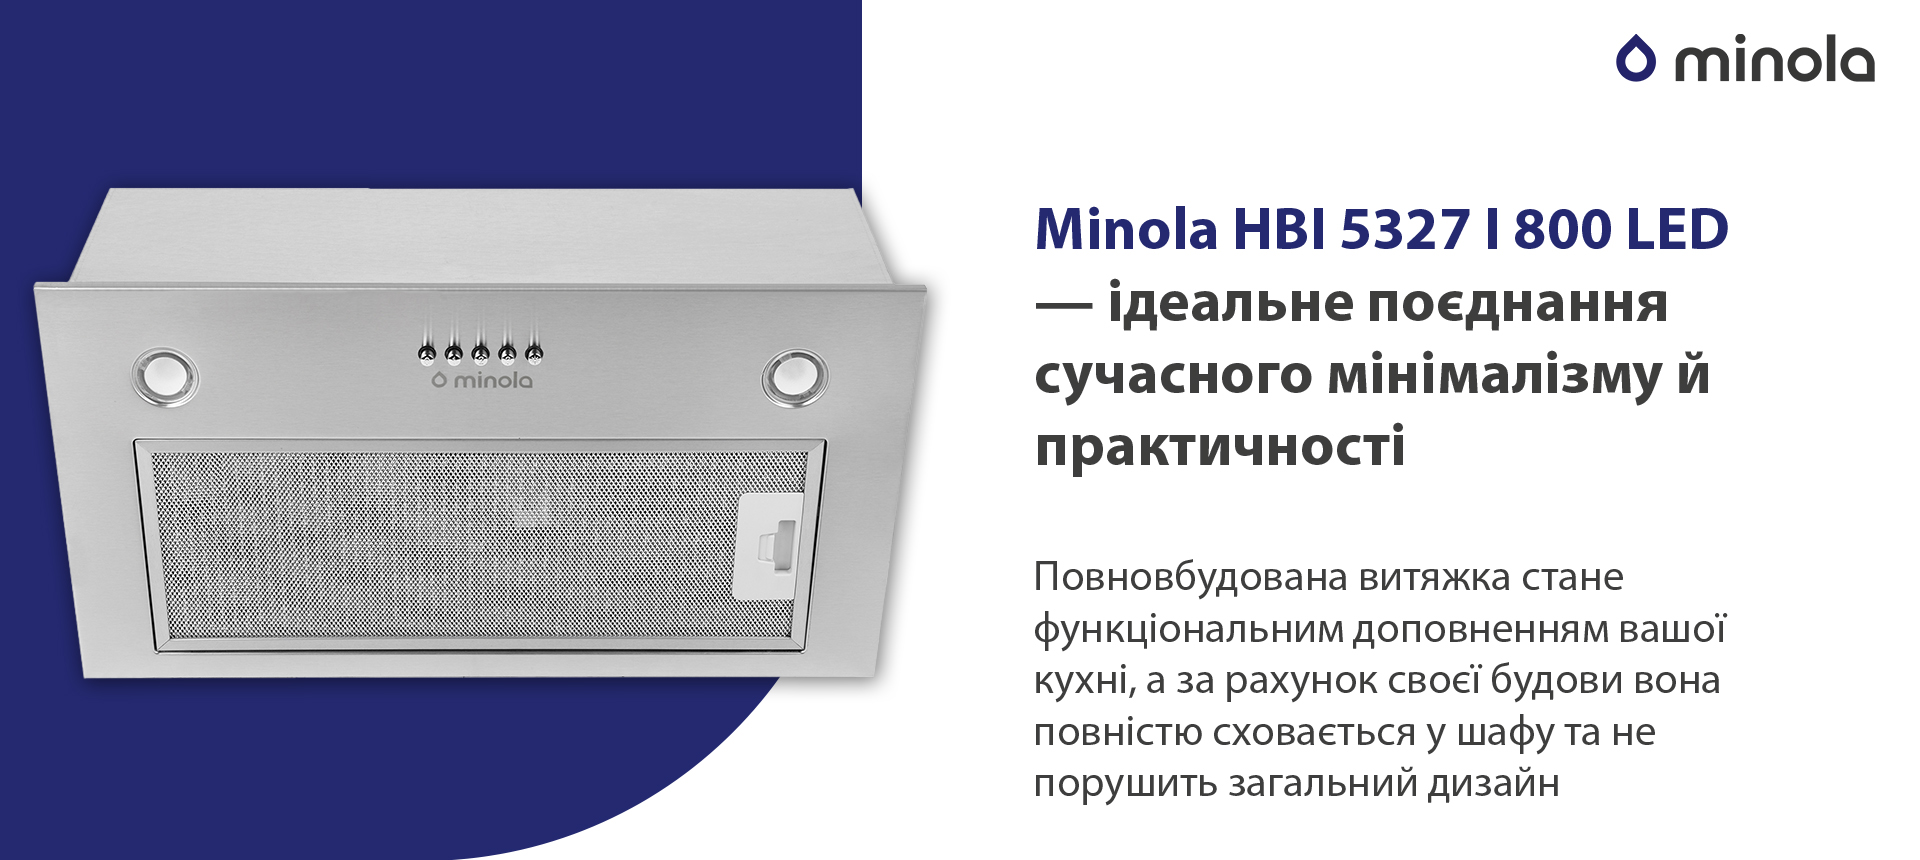 Minola HBI 5327 I 800 LED в магазине в Киеве - фото 10